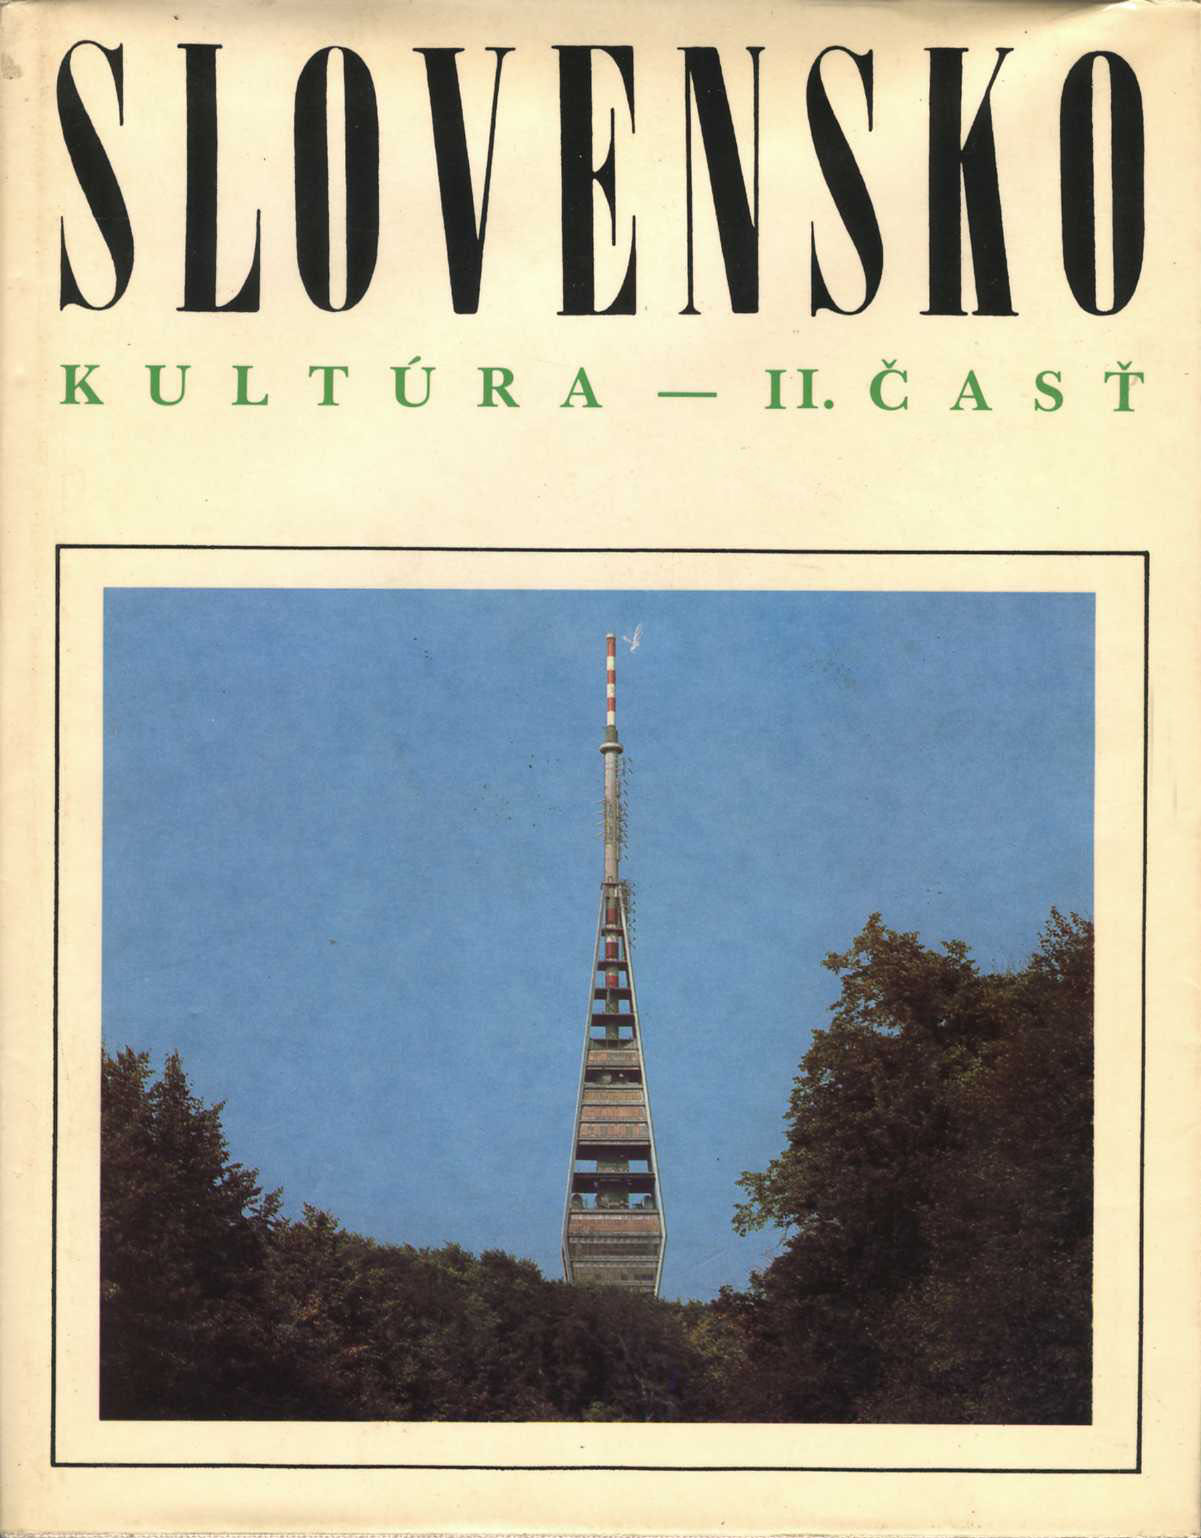 Slovensko 4 Kultúra - II. časť